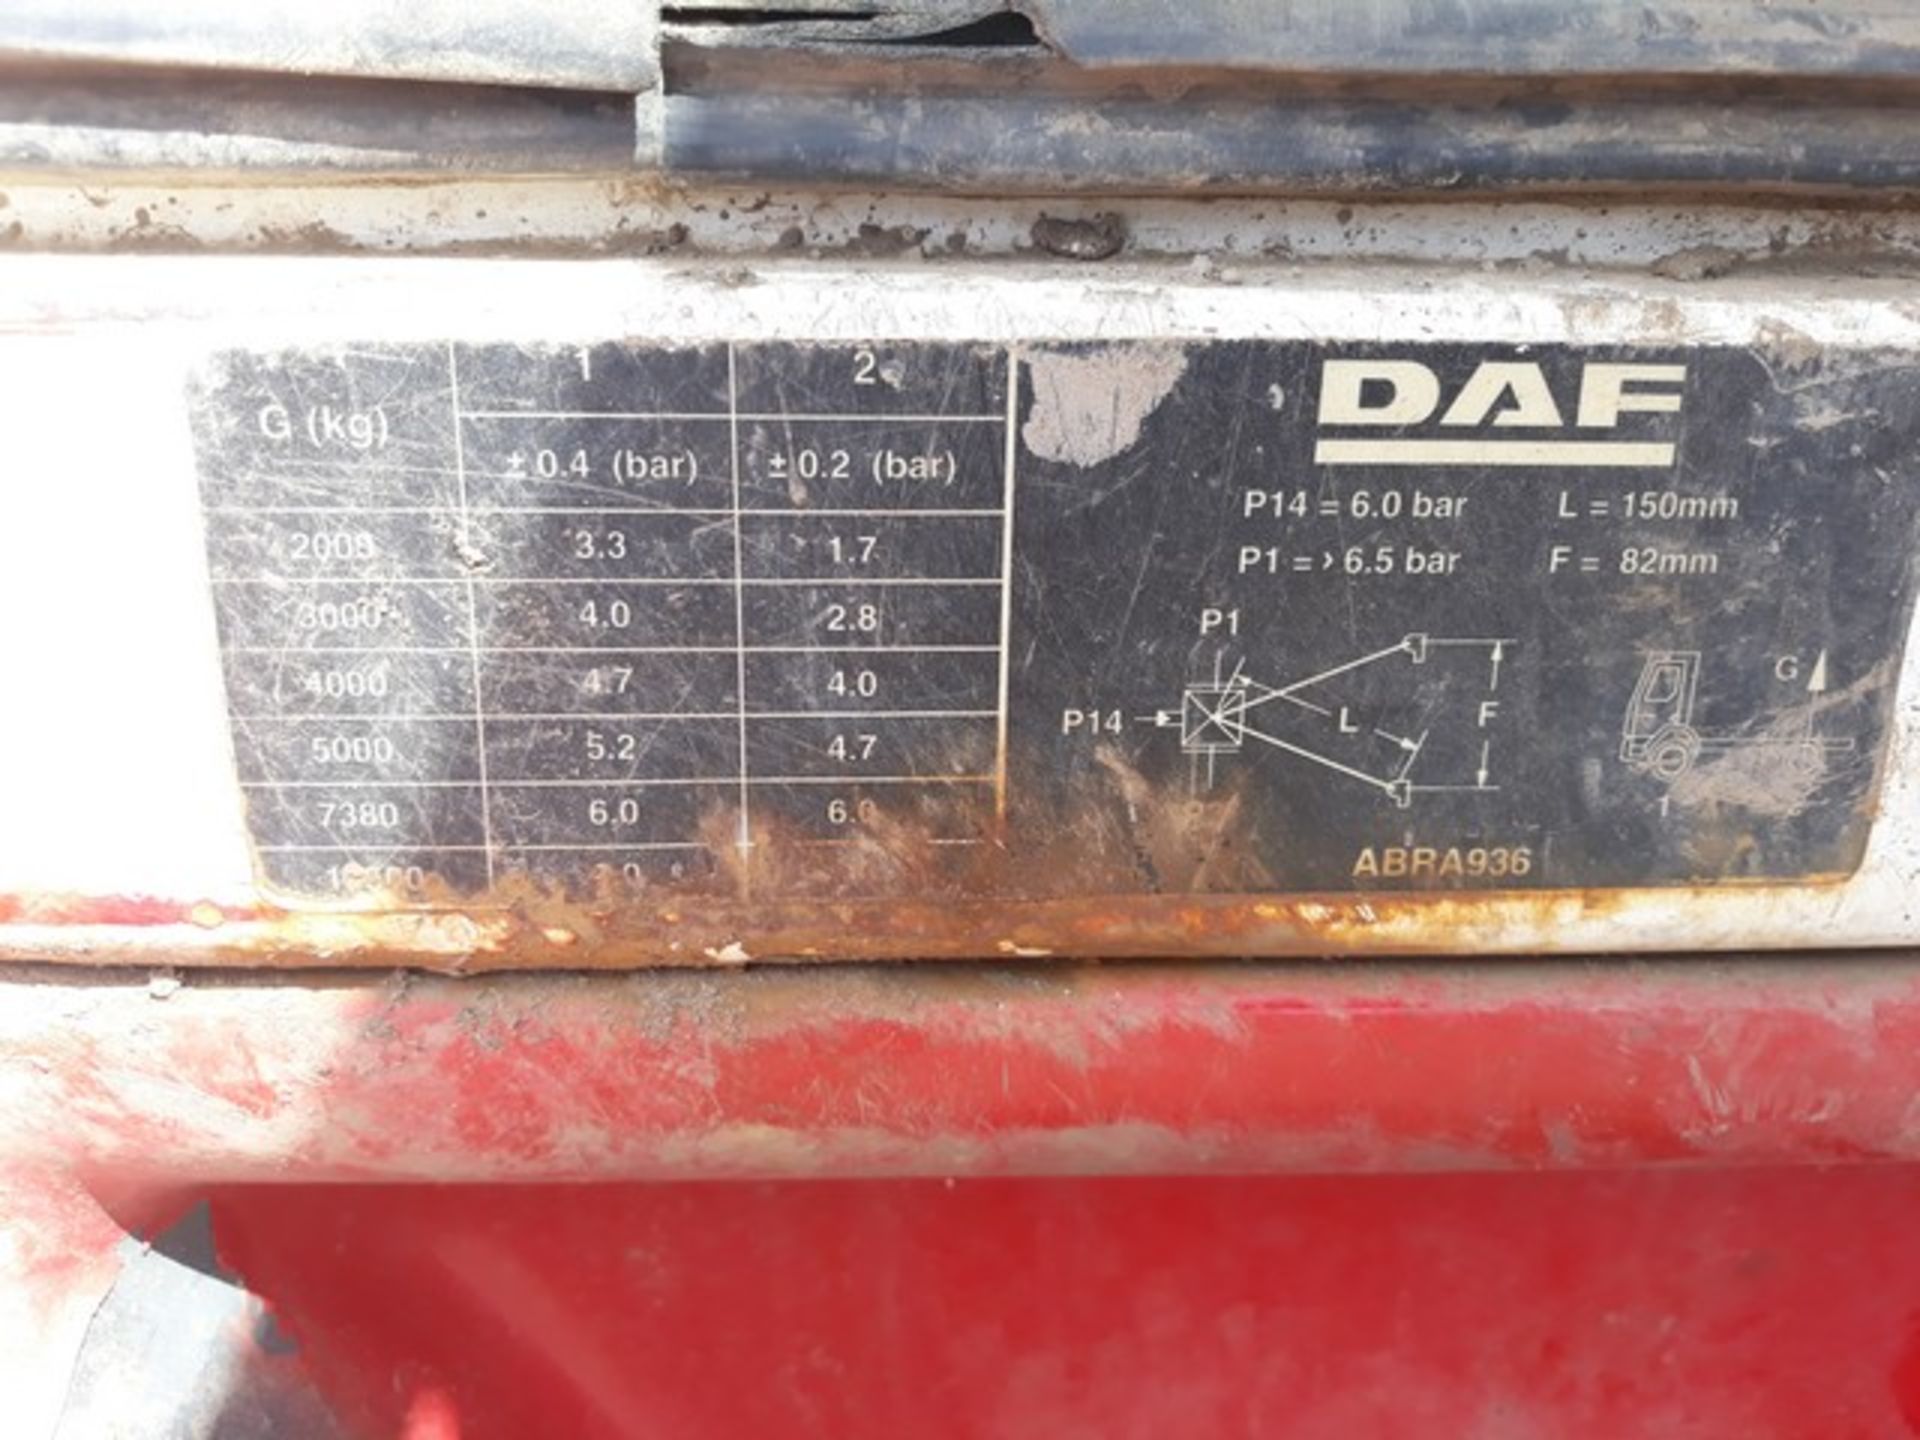 DAF TRUCKS FA LF55.220 - 5900cc - Image 7 of 30